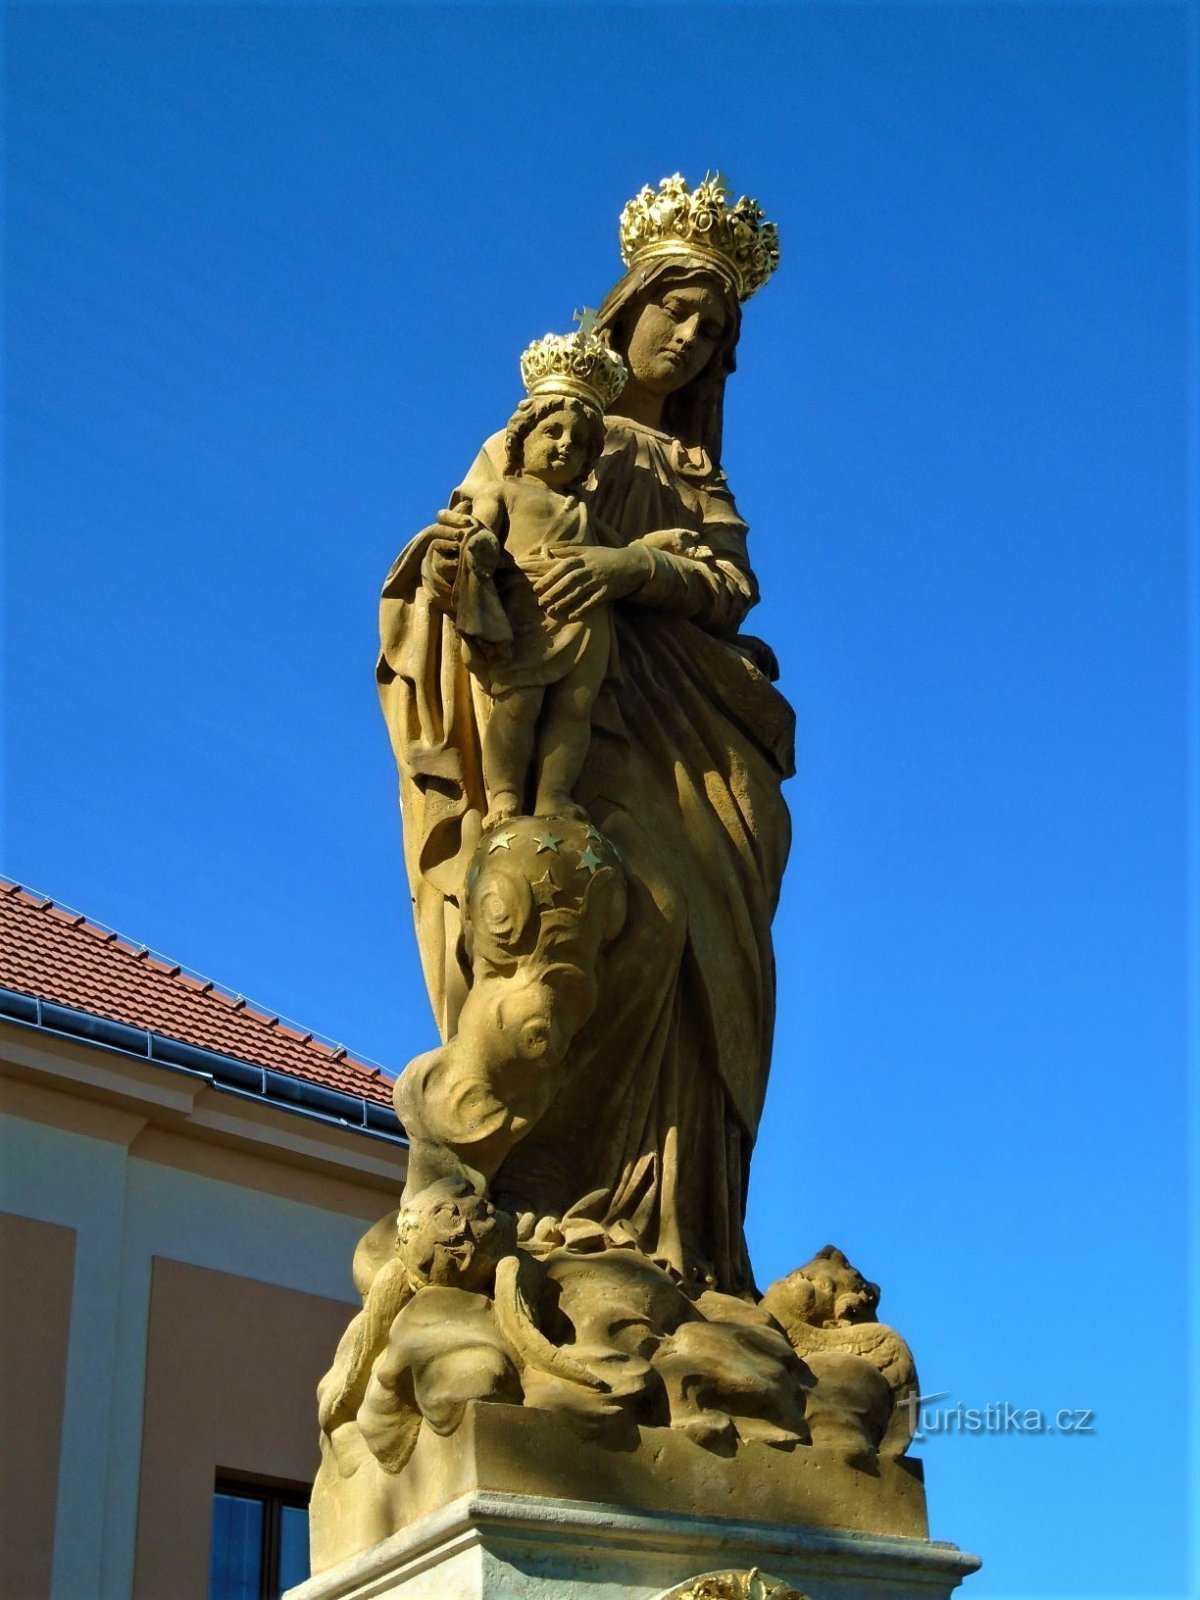 圣母玛利亚雕像（洛丁，29.9.2018 年 XNUMX 月 XNUMX 日）